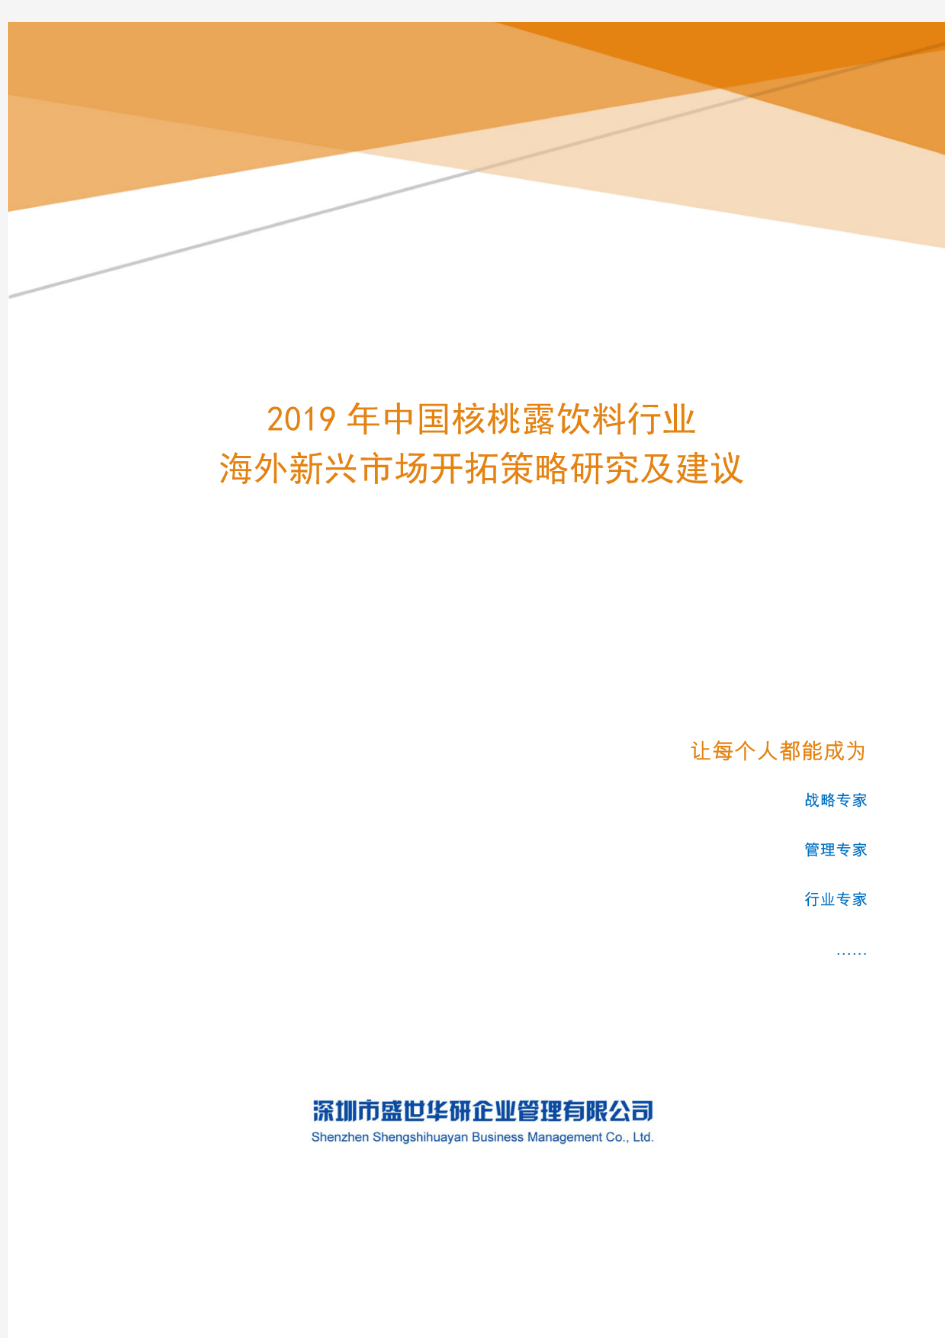 2019年中国核桃露饮料行业海外新兴市场开拓策略研究及建议